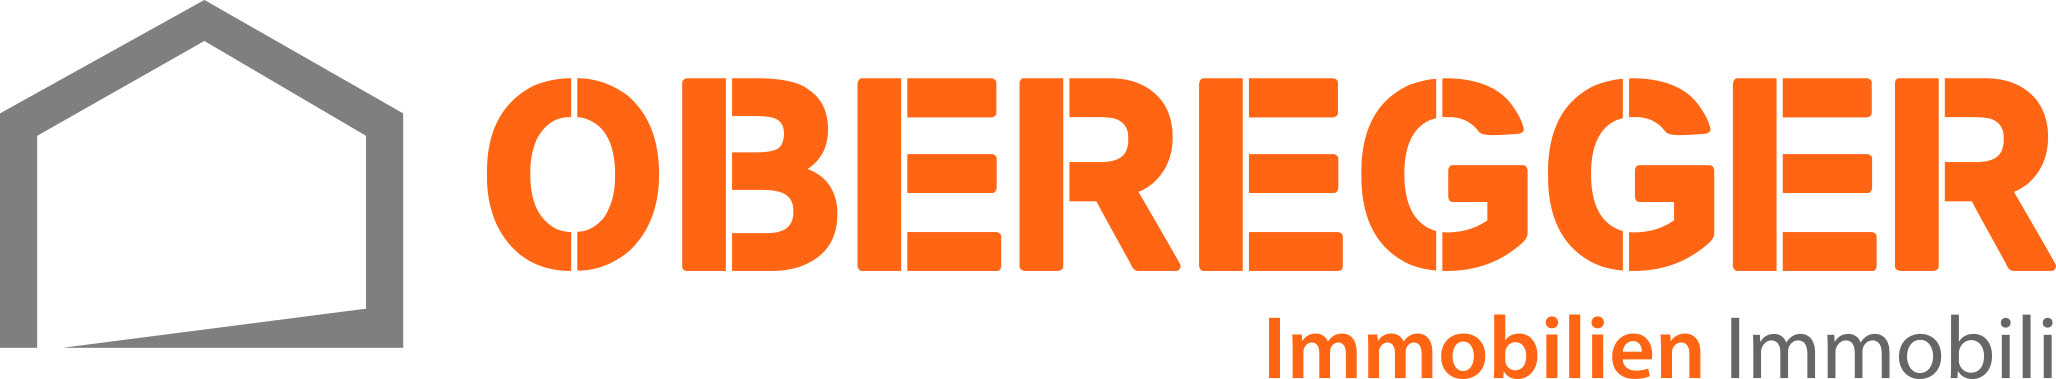 Oberegger Immobilien - Logo.jpg